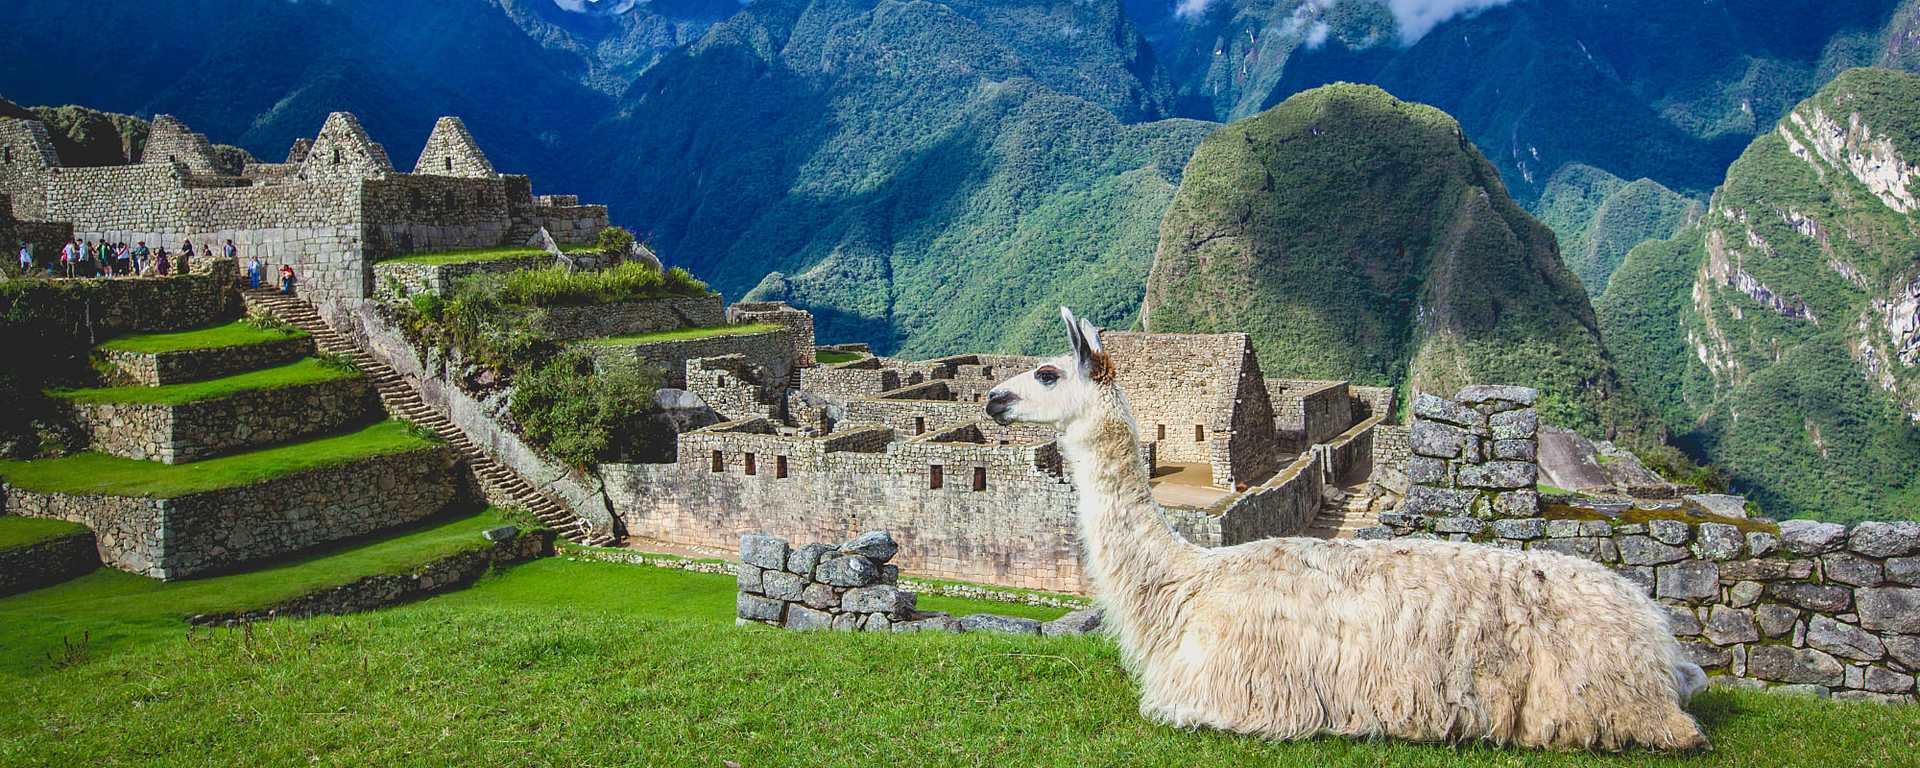 Llama at Machu Picchu, Peru